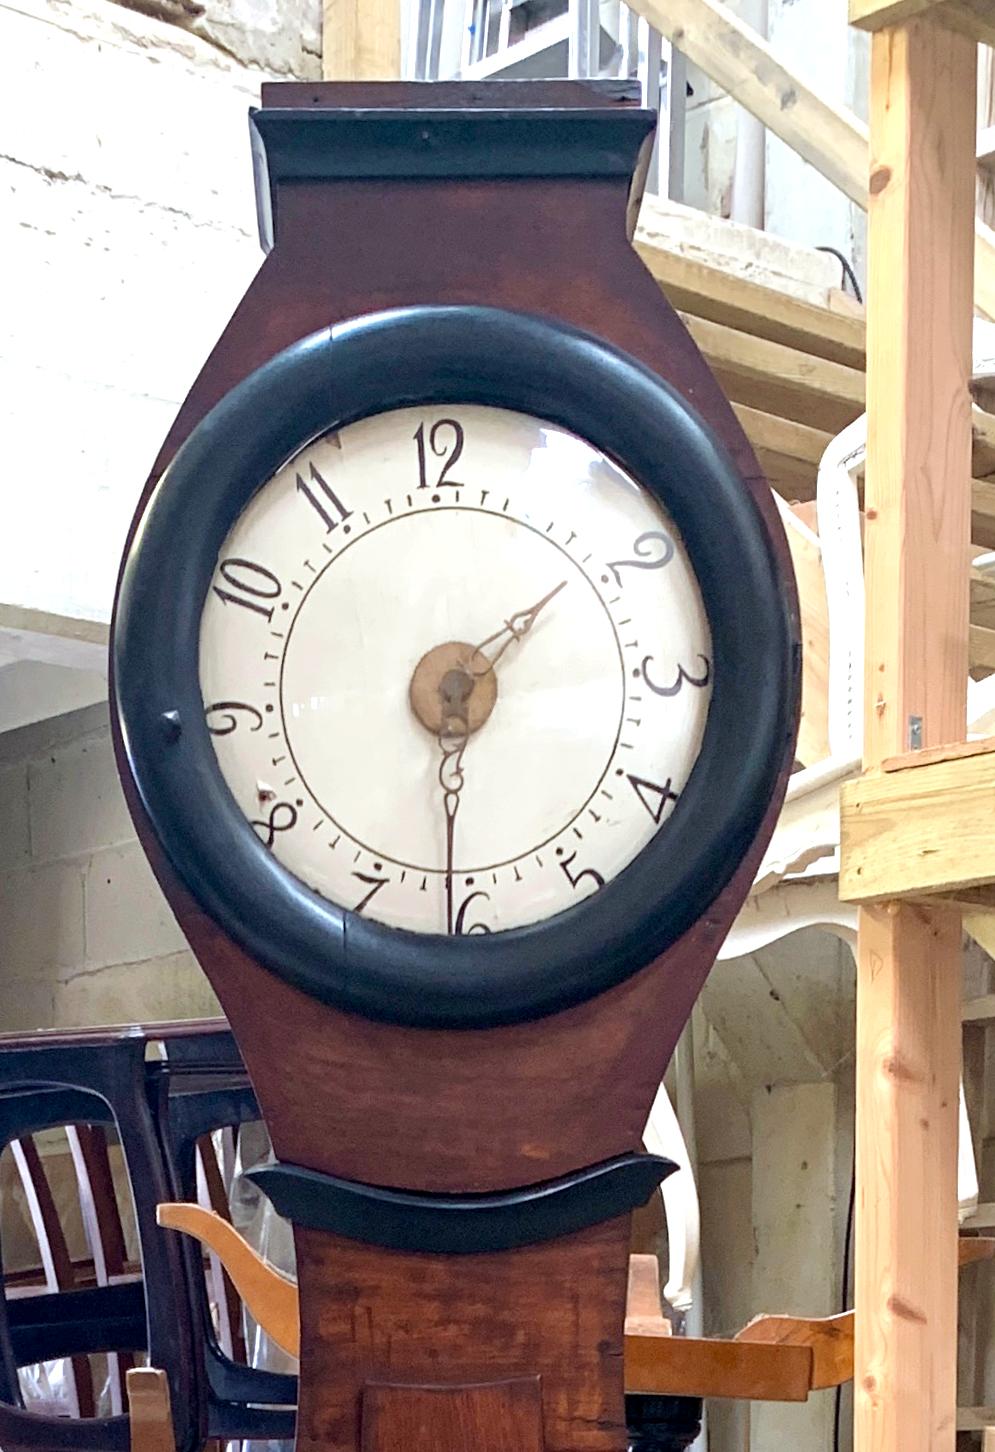 Antike schwedische Mora-Uhr aus den frühen 1800er Jahren in natürlicher Ausführung und mit einer großen taillierten Form Körper und ein gutes Gesicht mit vielen Details mit Ormolu Stil Akzente. Maße: 210cm.

Sie hat den klassischen verlängerten